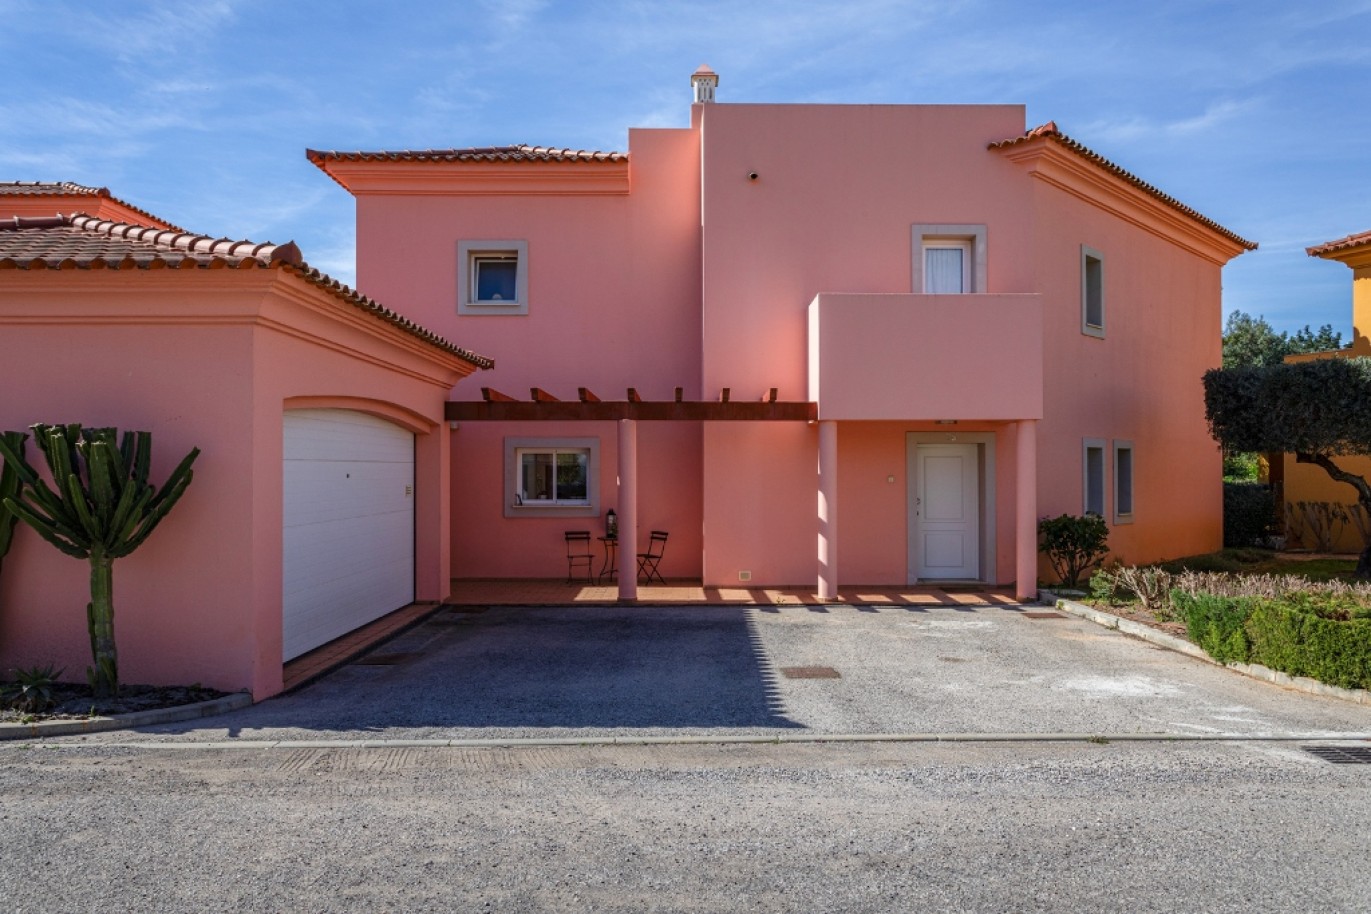 Fantástica moradia isolada 3 quartos, para venda em Vilamoura, Algarve_253980